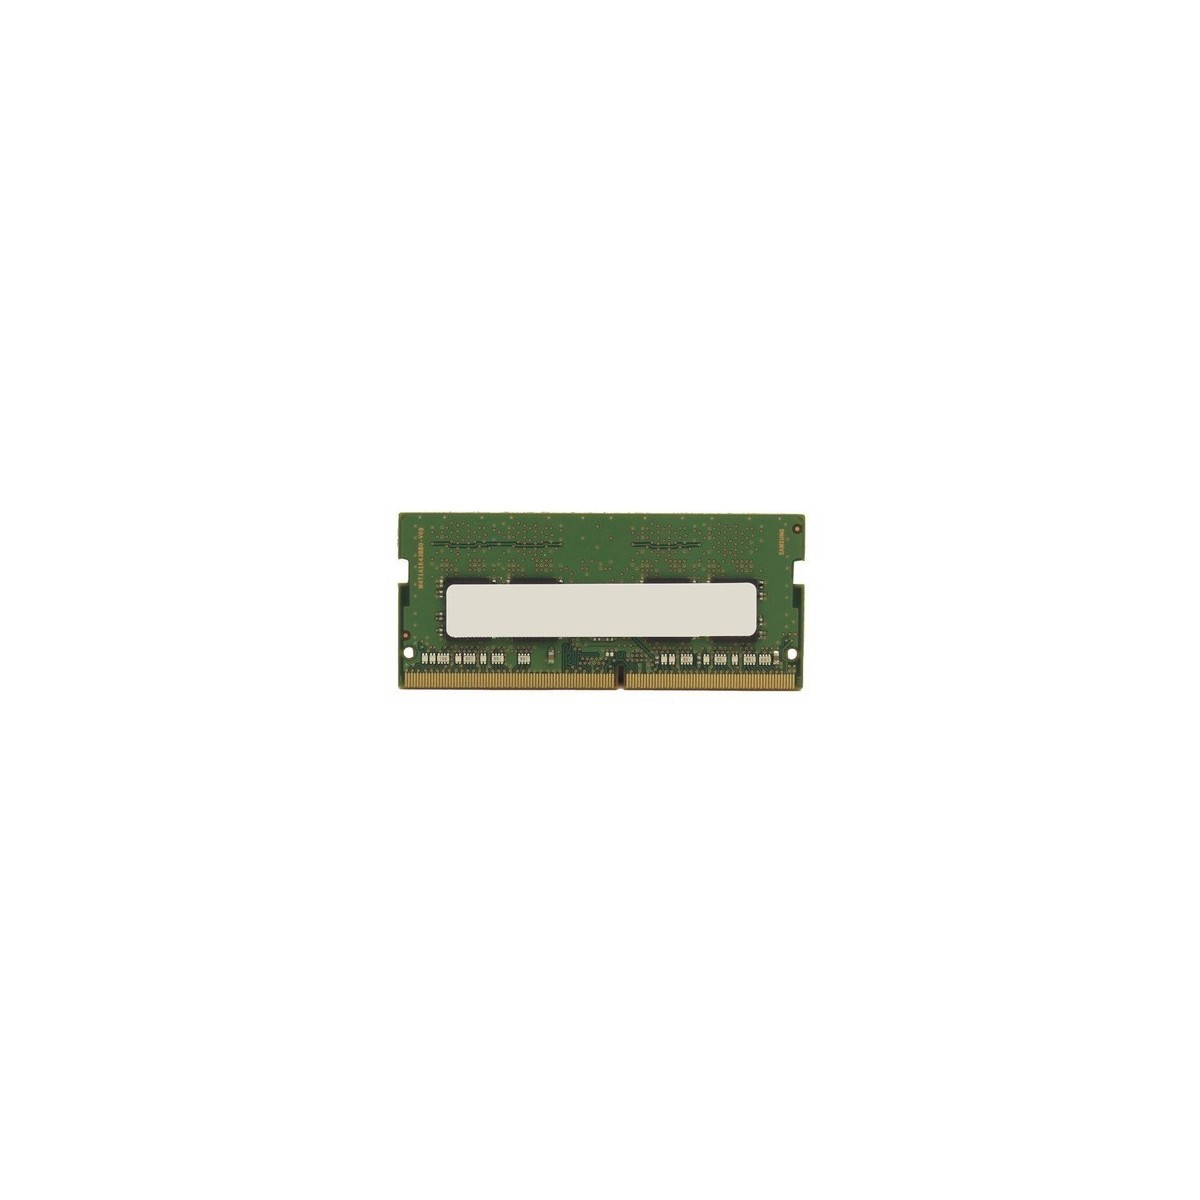 Fujitsu 8GB DDR4-2133 - 8 GB - 1 x 8 GB - DDR4 - 2133 MHz - 260-pin SO-DIMM